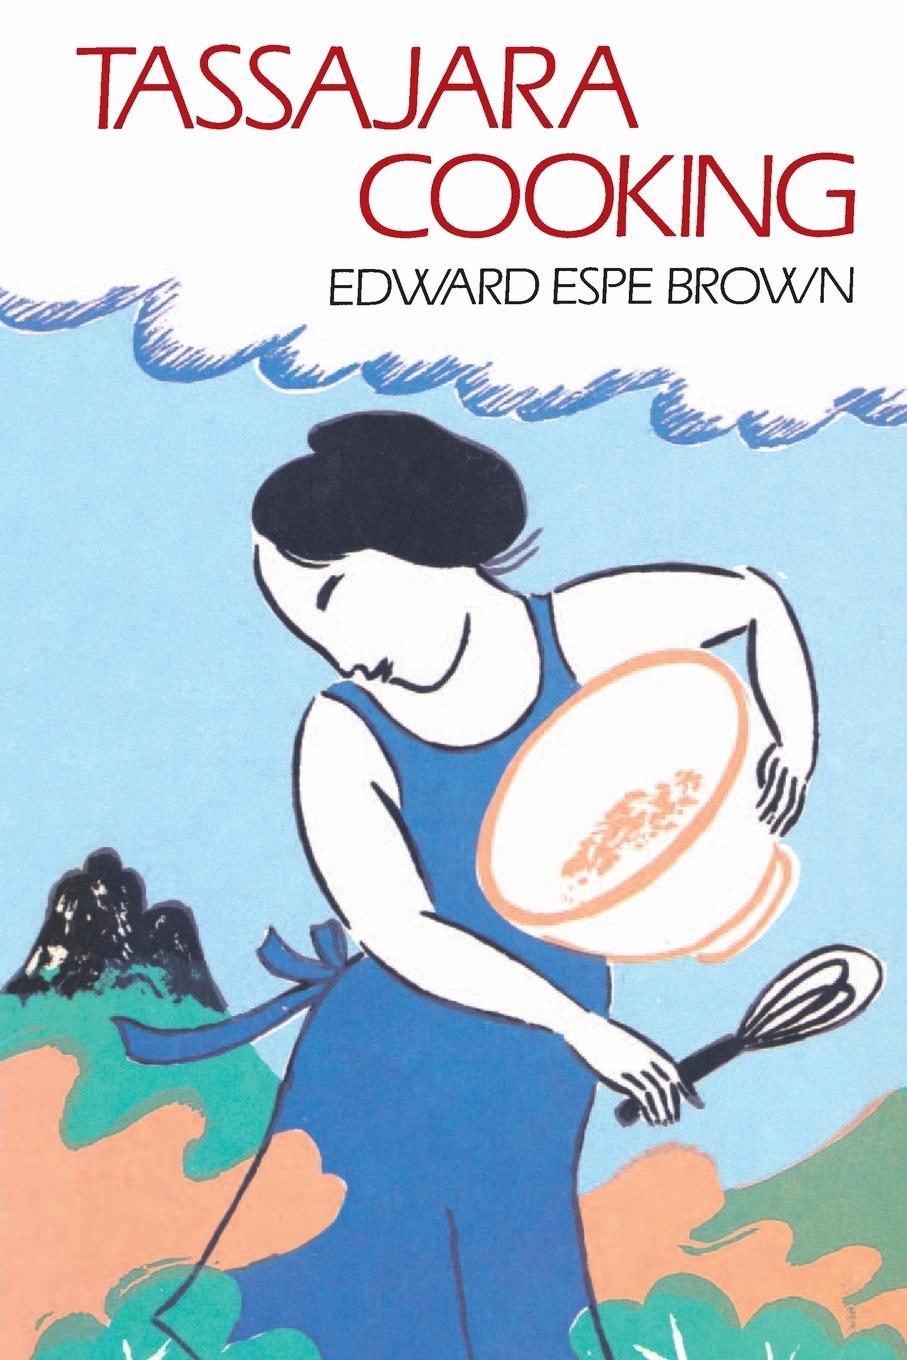 Tassajara Cooking - Edward Espe Brown